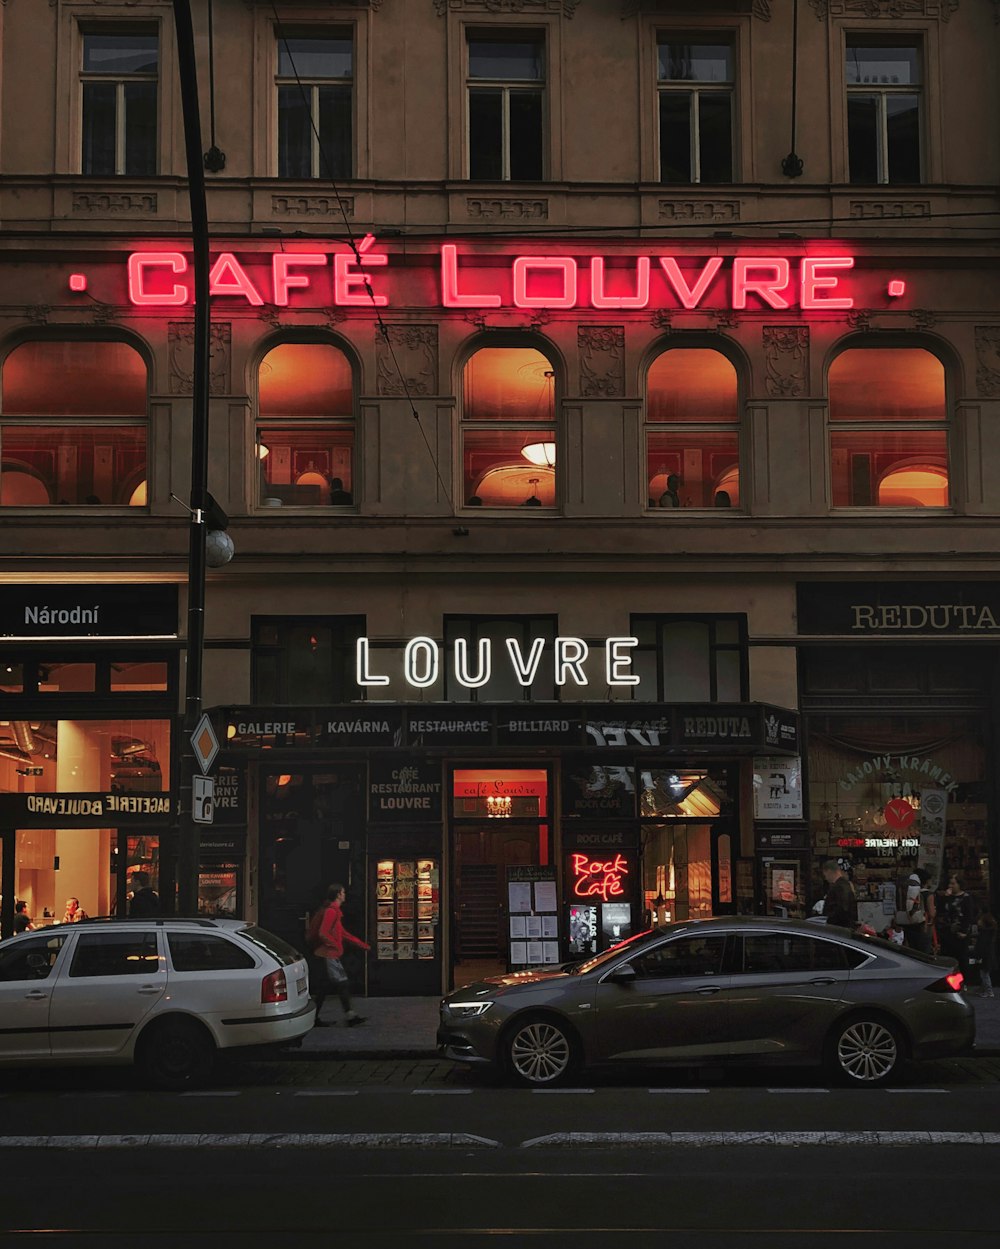 Cafe Louvre shop front